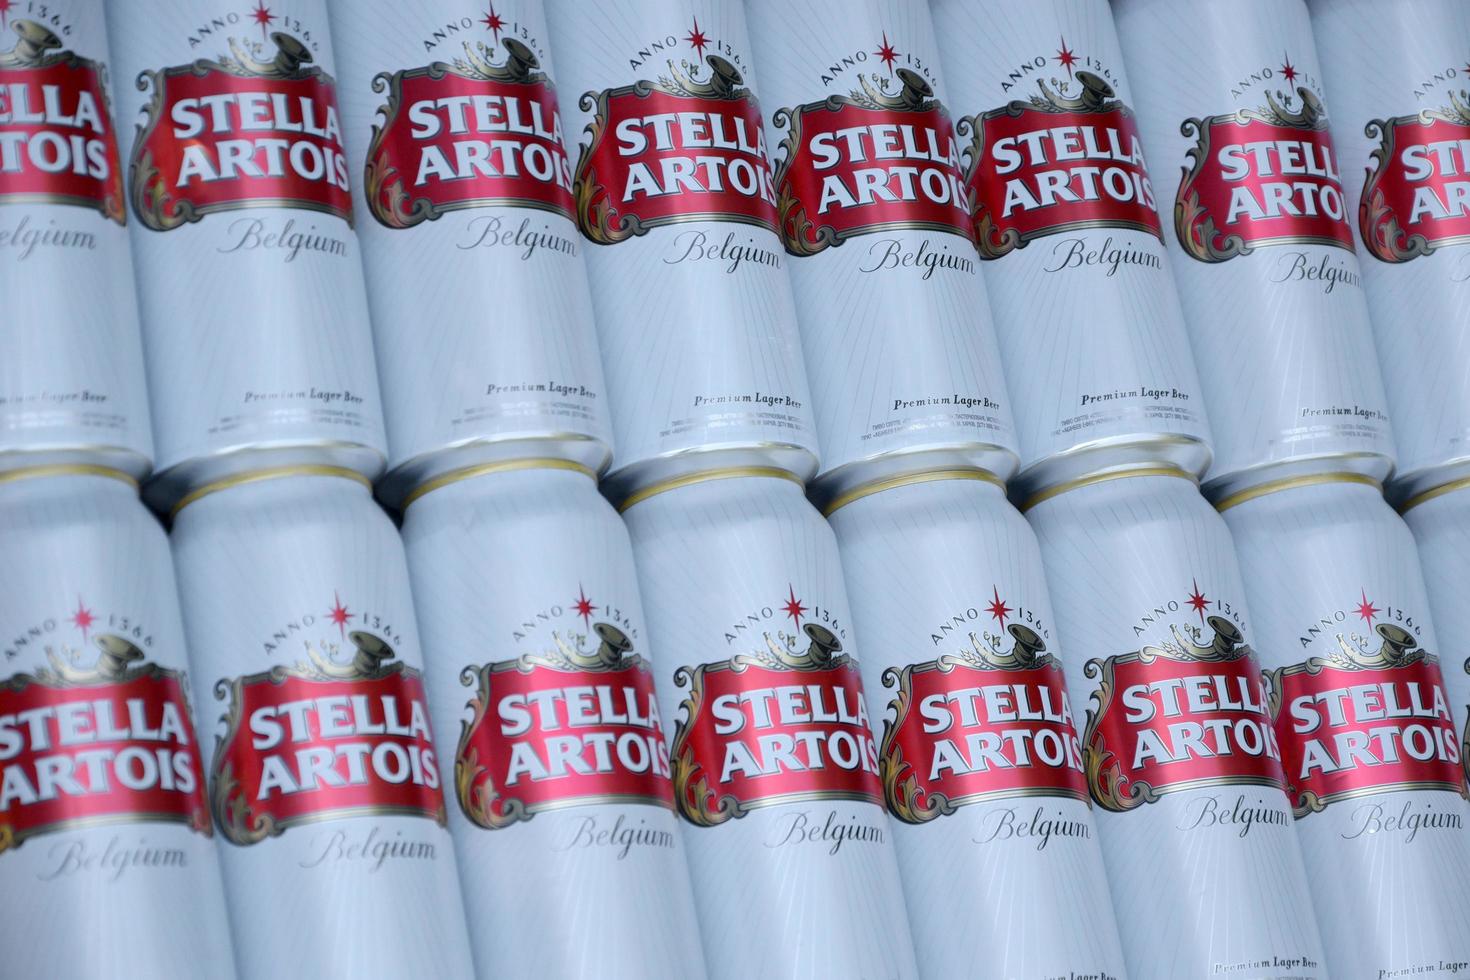 Jarkov. ucrania - 2 de mayo de 2022 muchas latas de cerveza stella artois al aire libre. stella artois es la cerveza belga más famosa del mundo propiedad de ab inbev foto